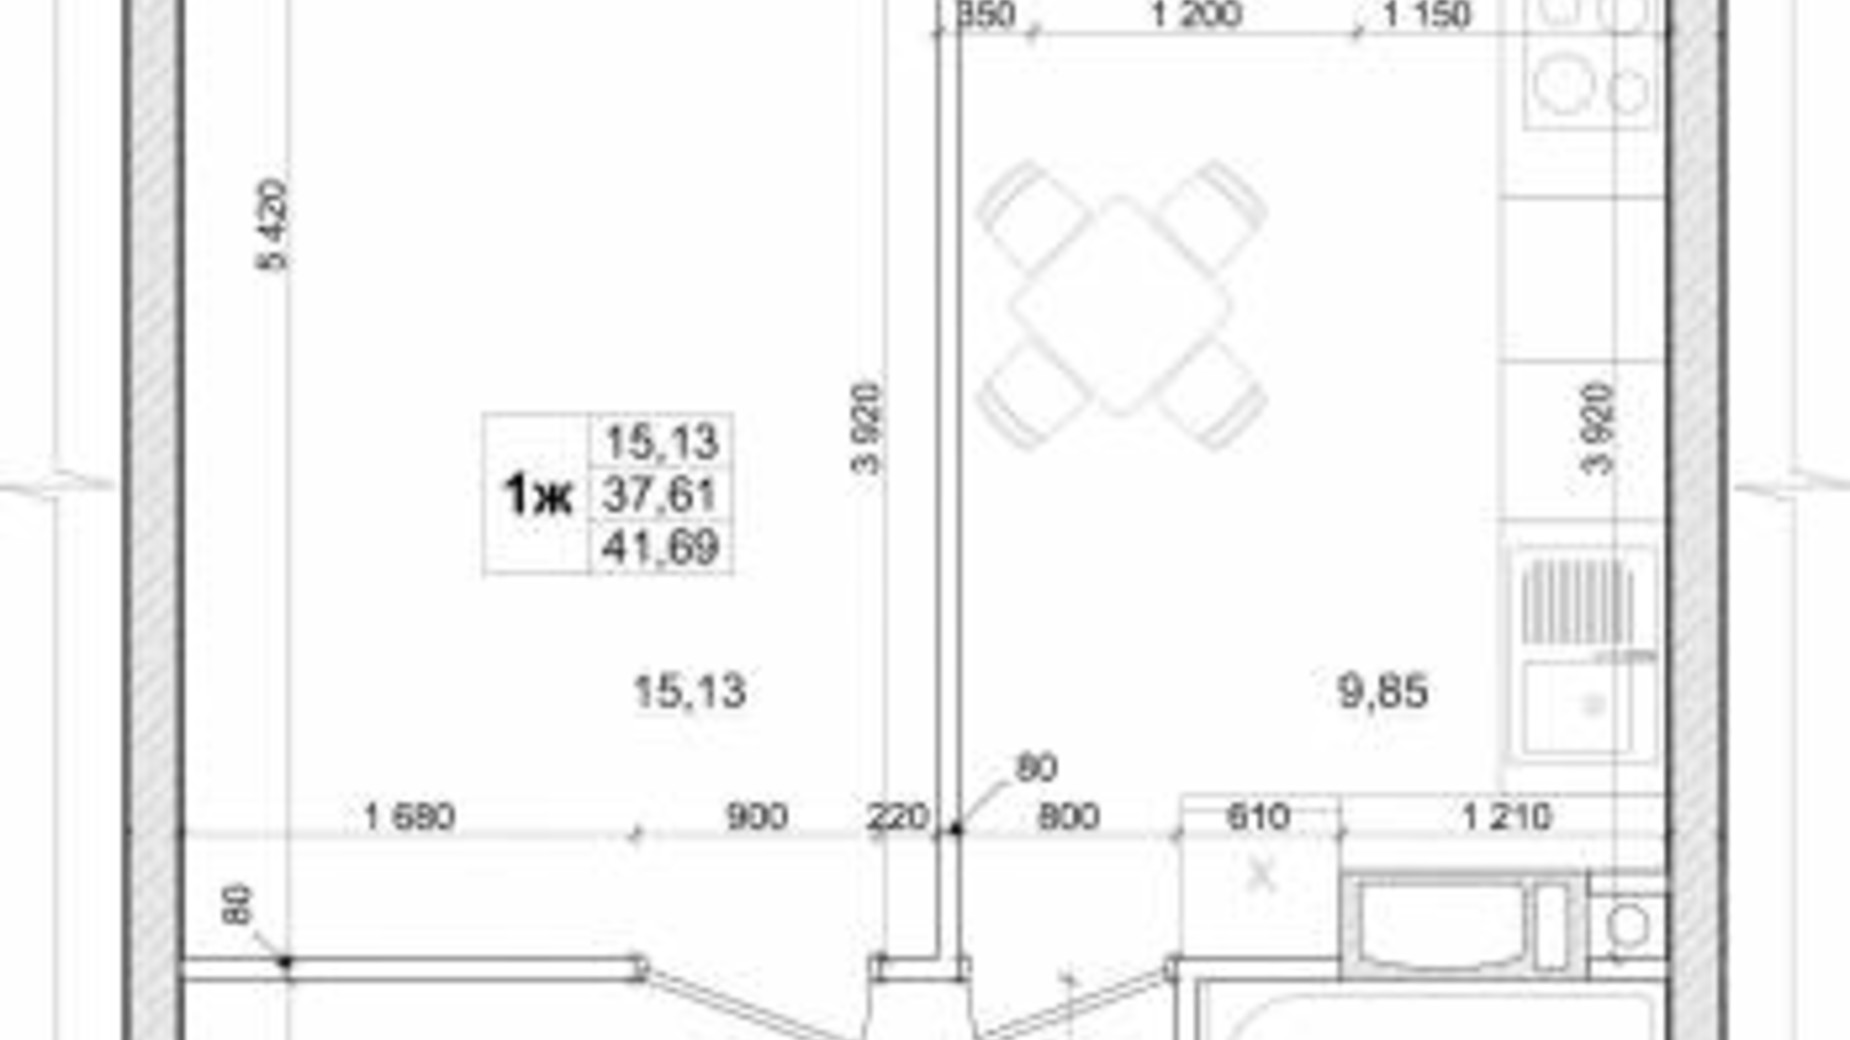 Планировка 1-комнатной квартиры в ЖК Вудлайн 41.69 м², фото 537267